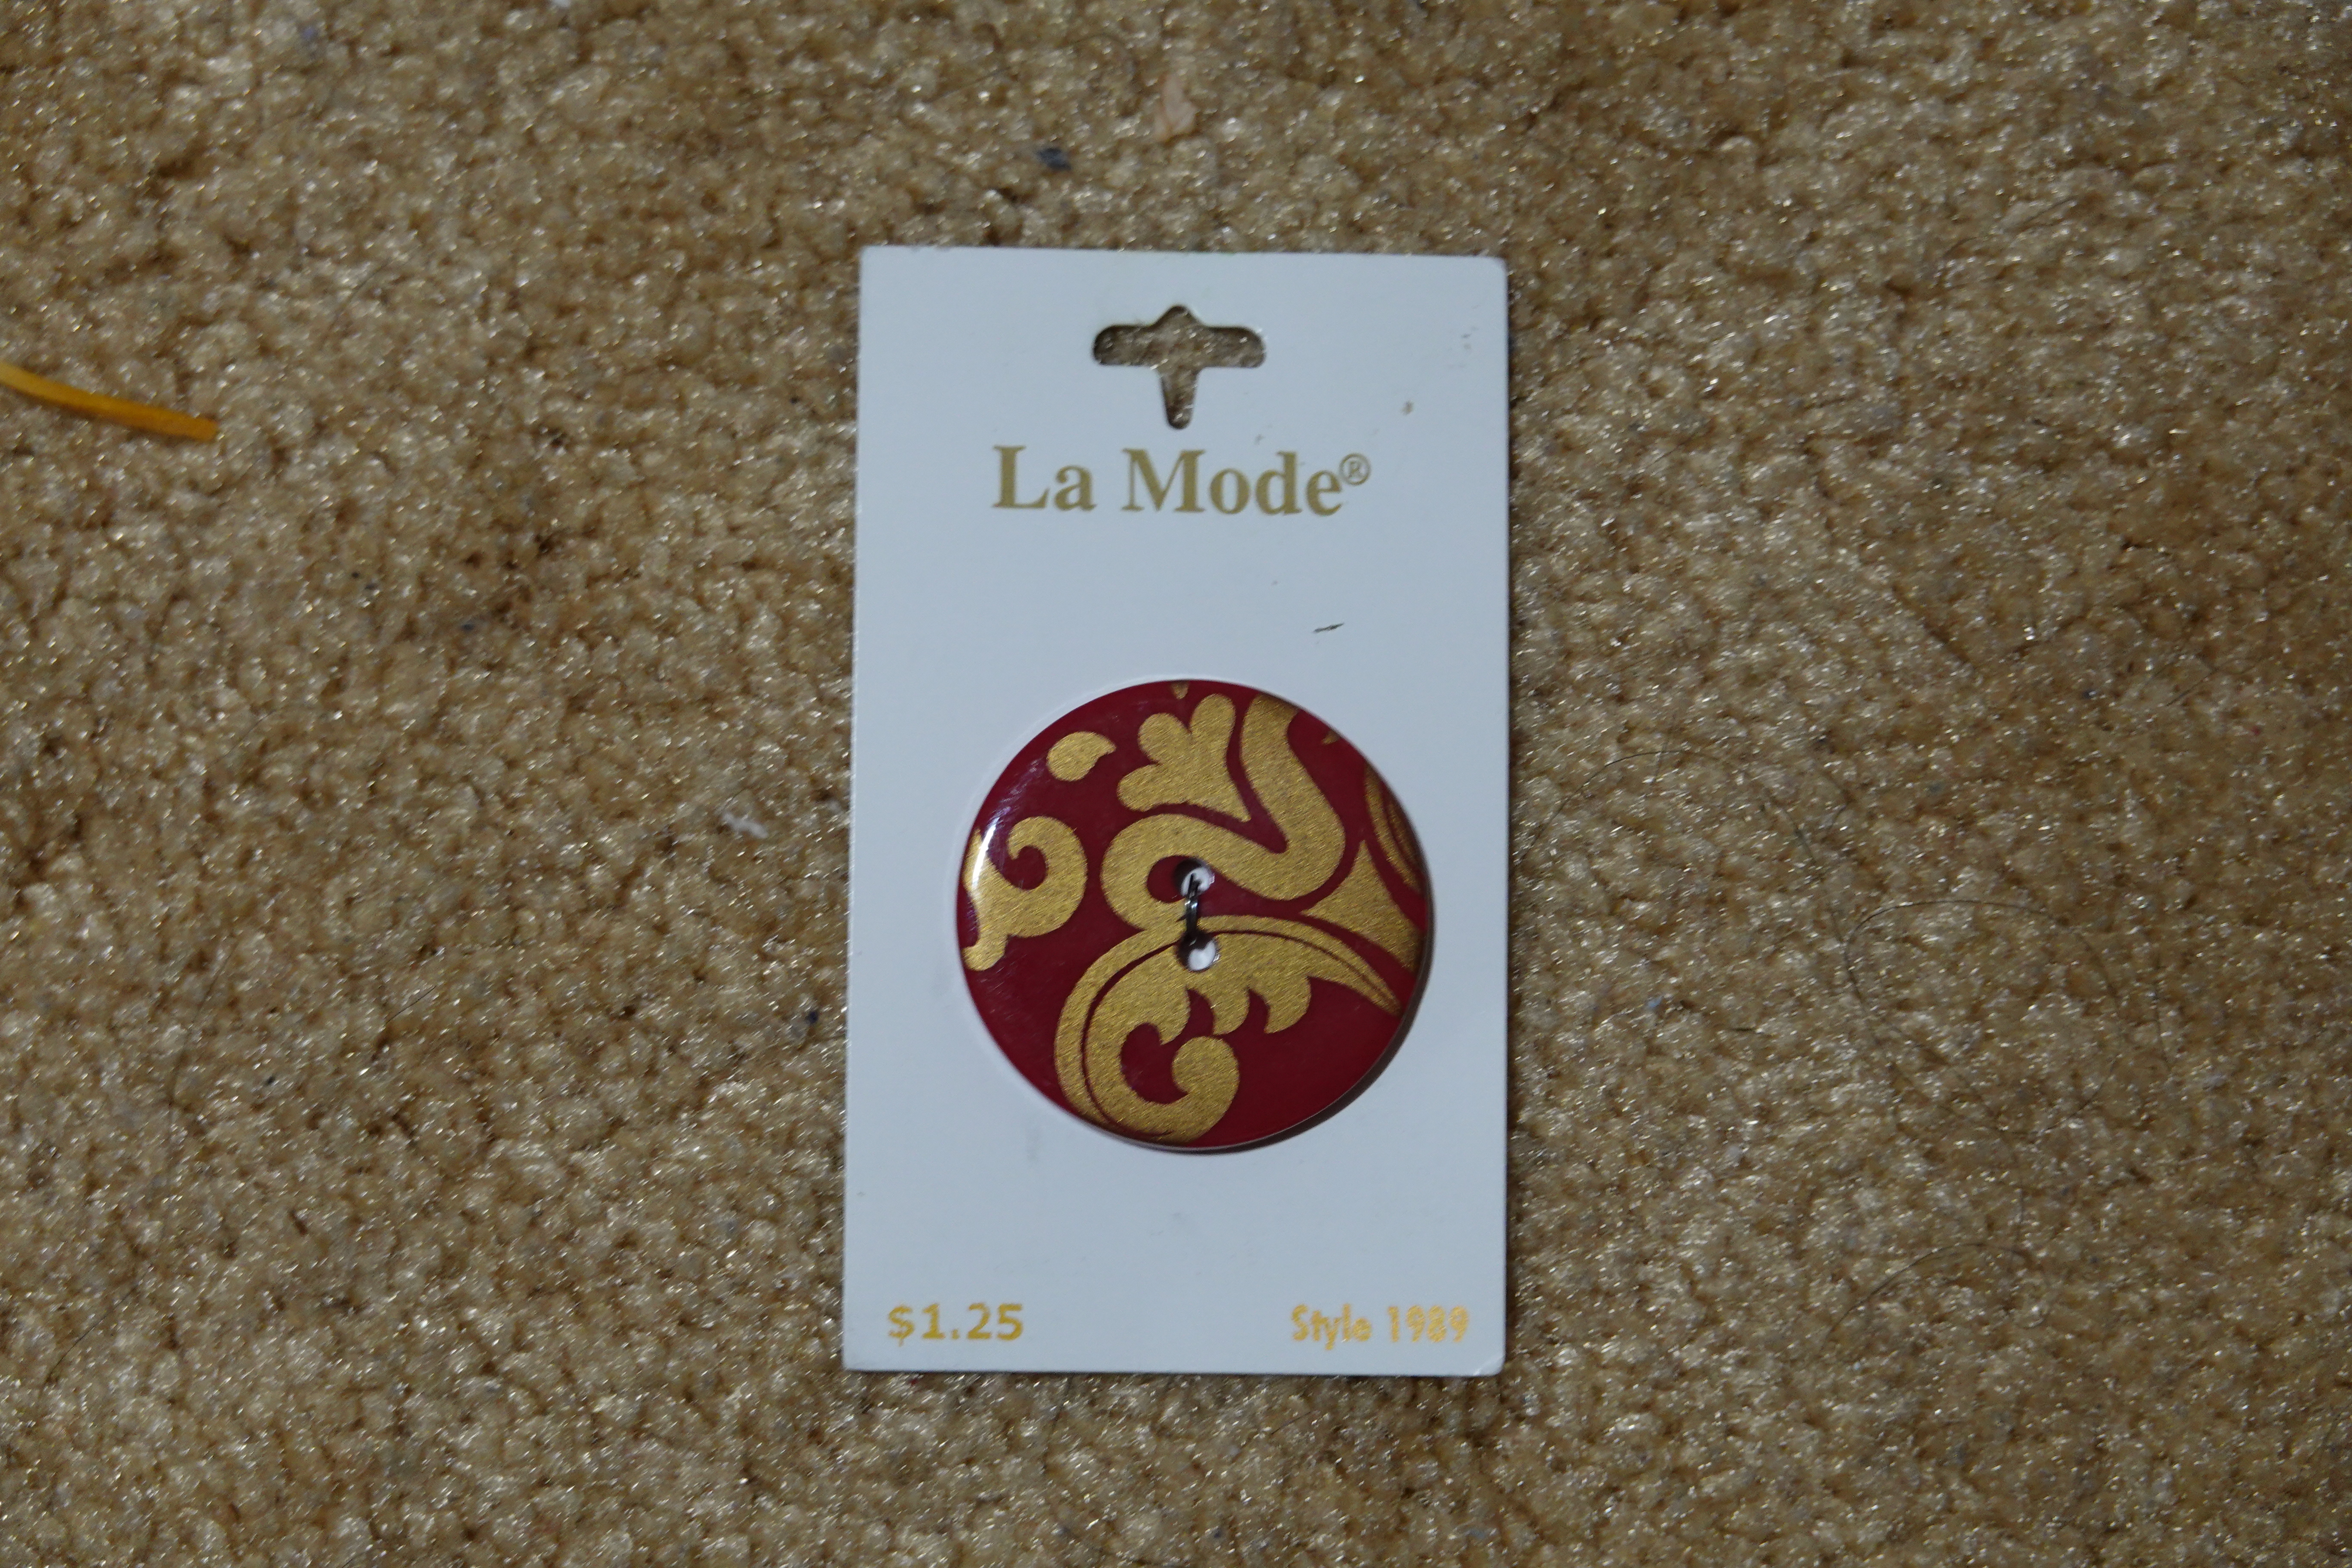 A La Mode Assorted Button